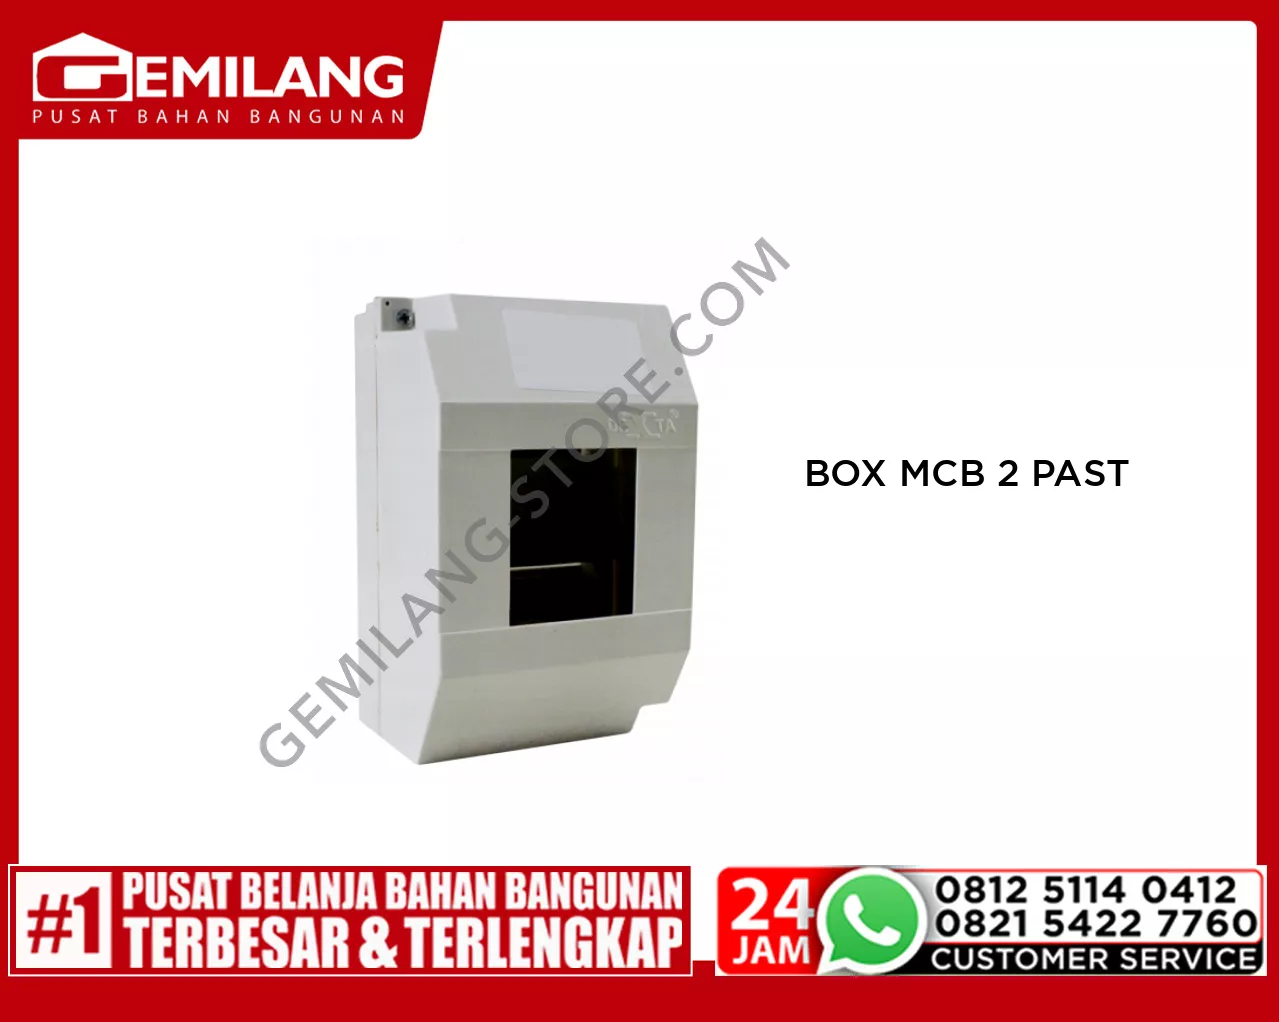 IL BOX MCB 2 PAST